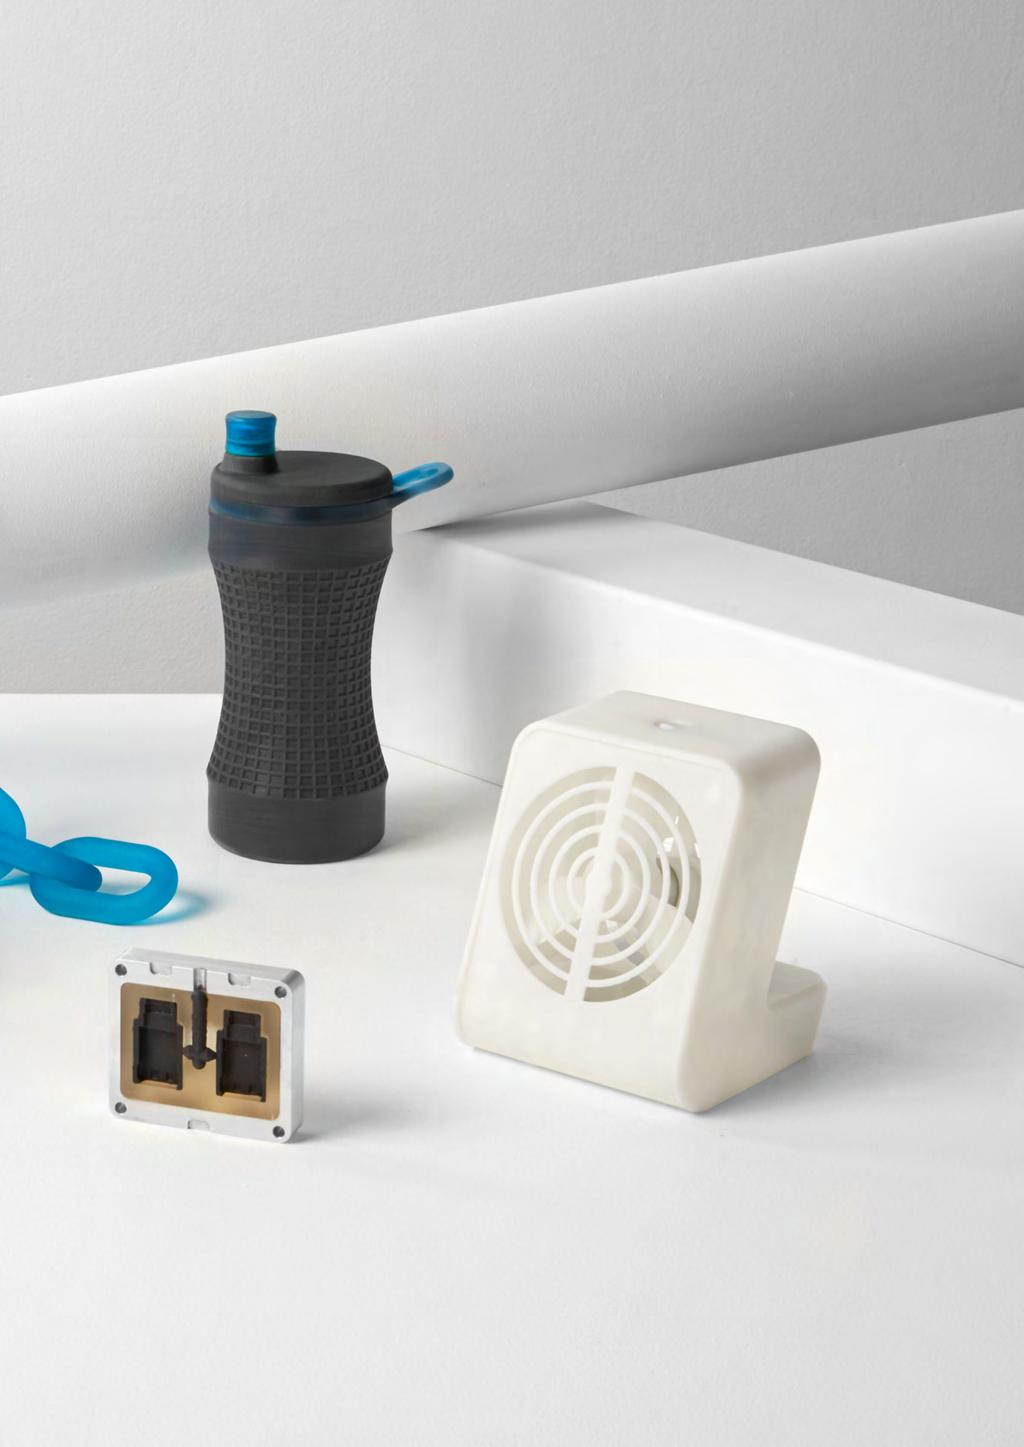 NOA 3D: CHI È E COSA OFFRE NOA 3D entra nel mercato della stampa additiva nel 2014, proponendo servizi di noleggio o vendita di stampanti 3D per grandi e piccole imprese, dal settore automotive,